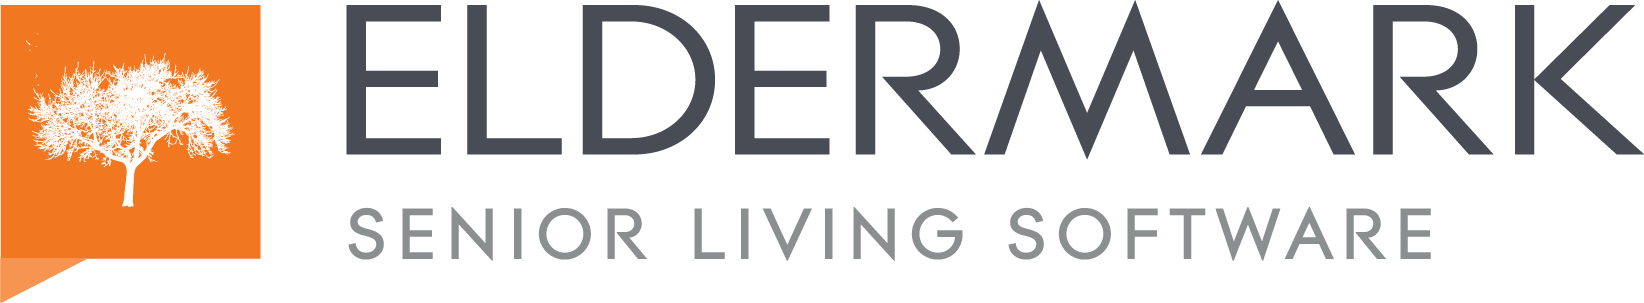 Eldermark-SeniorLivingSoftware-Logo-4C-Darker